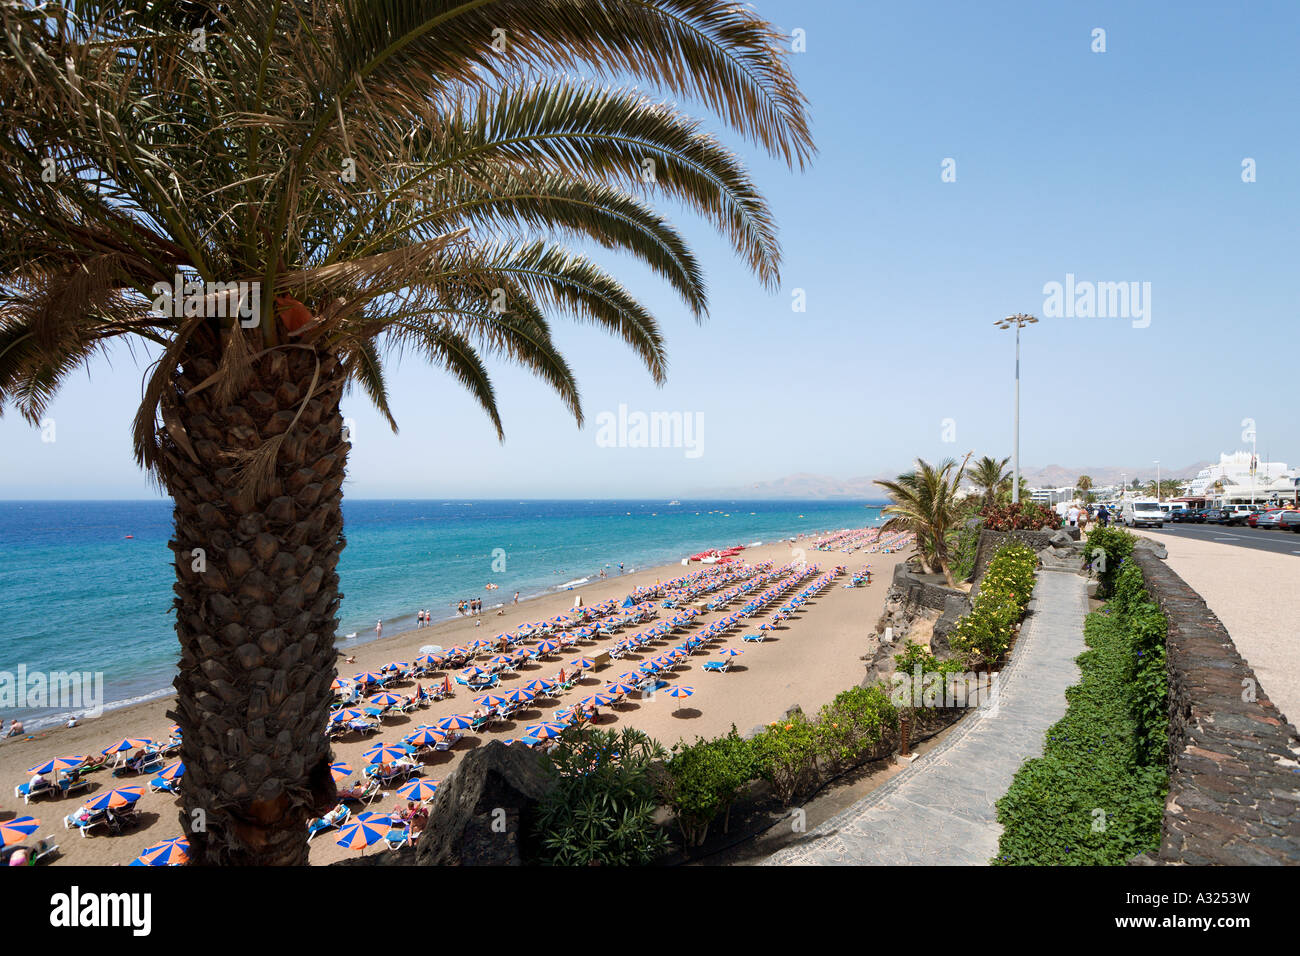 La principale plage (Playa Grande), Puerto del Carmen, Lanzarote, îles Canaries, Espagne Banque D'Images